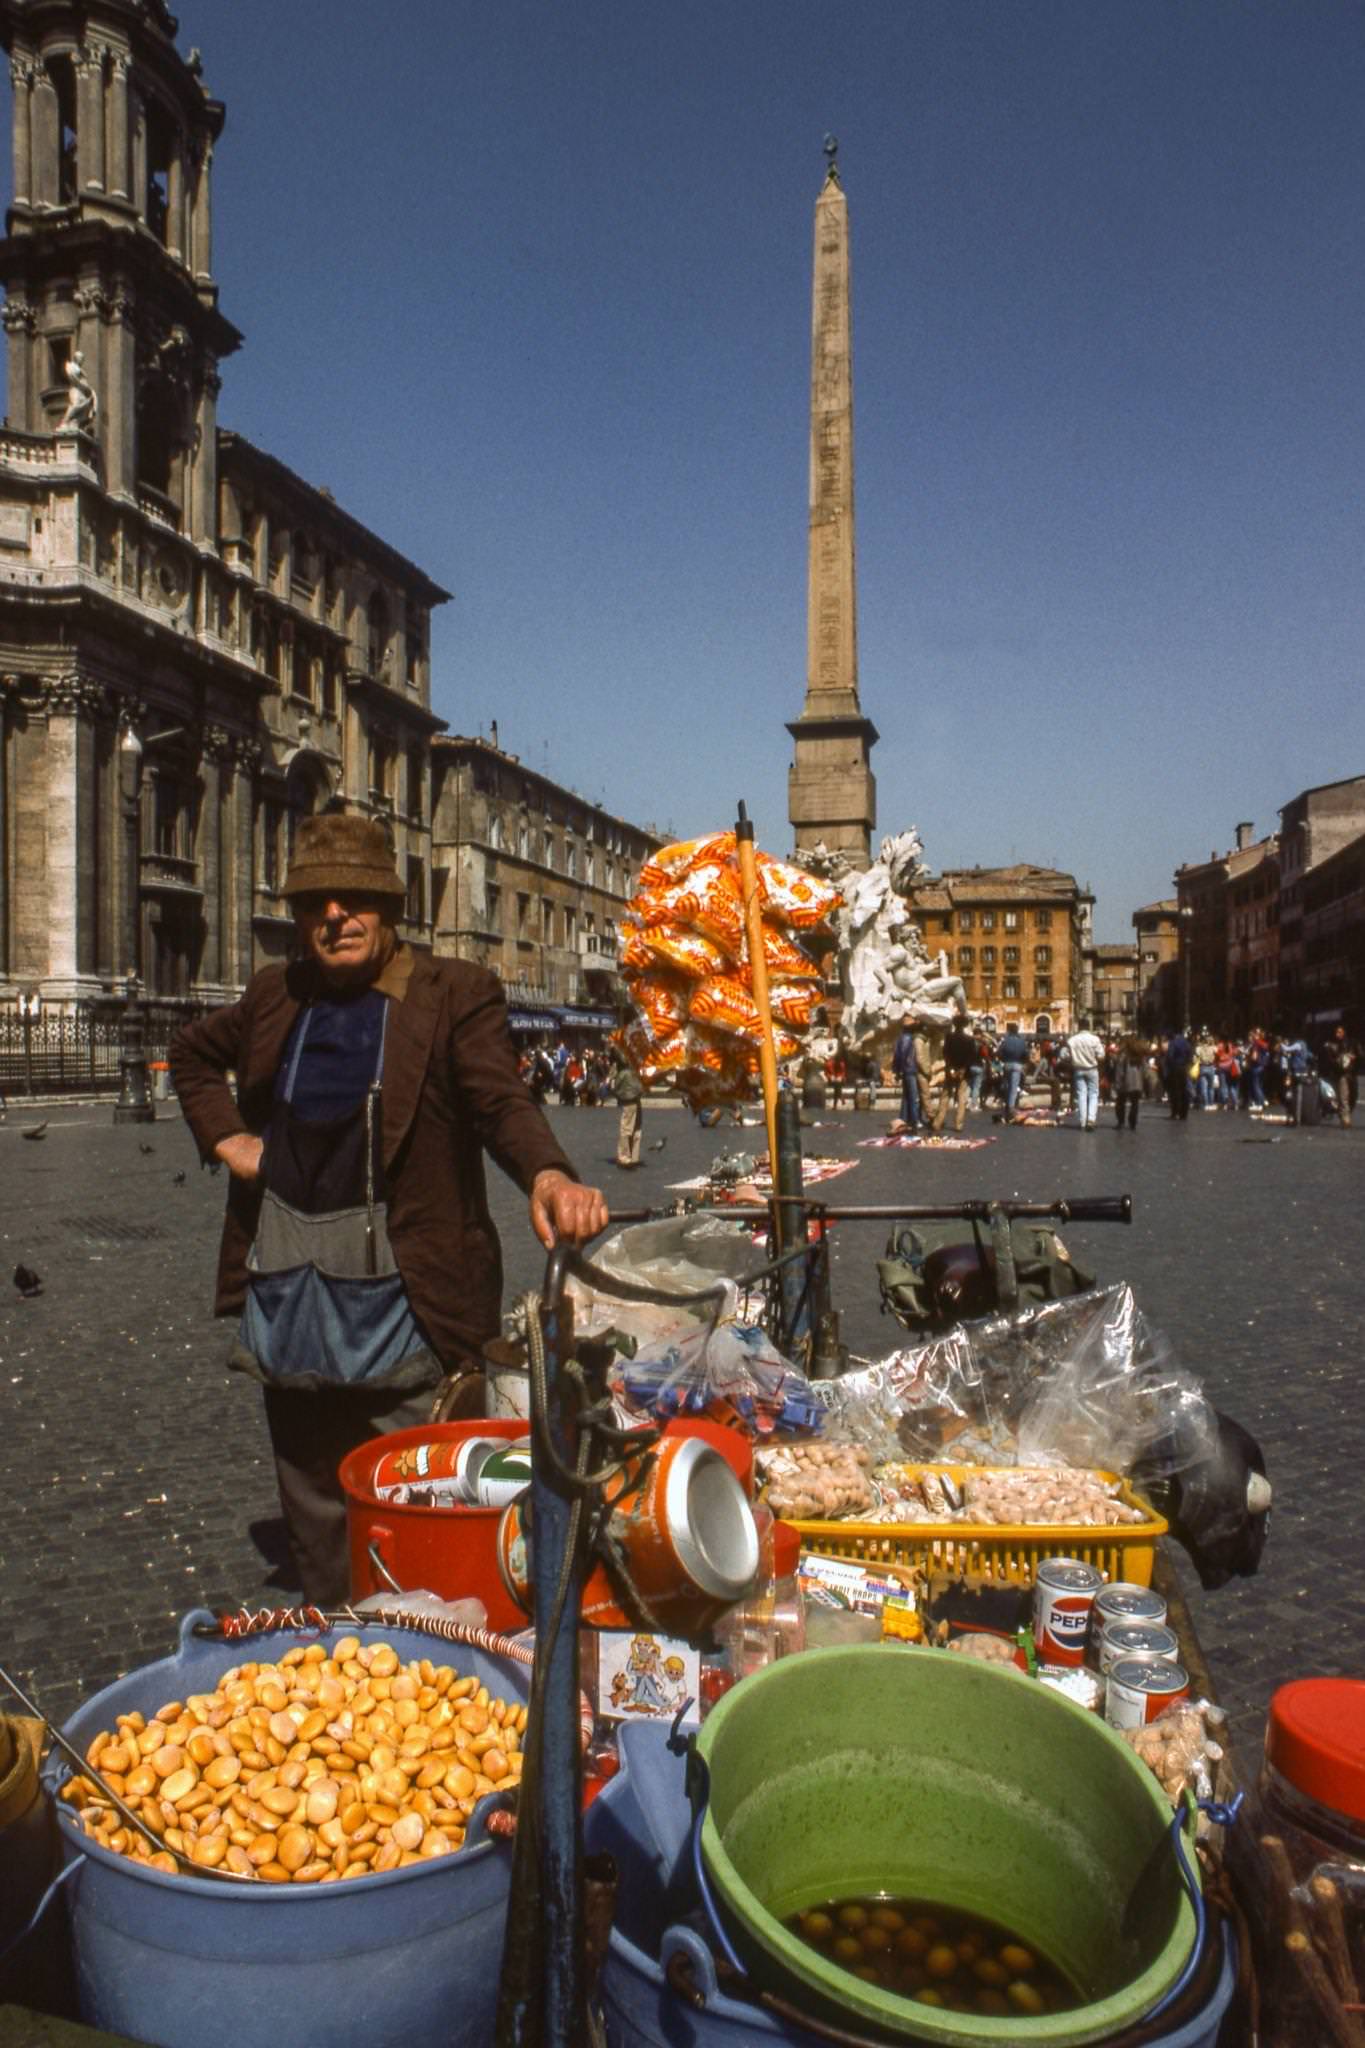 Vendor in Piazza Navona, Rome, 1984